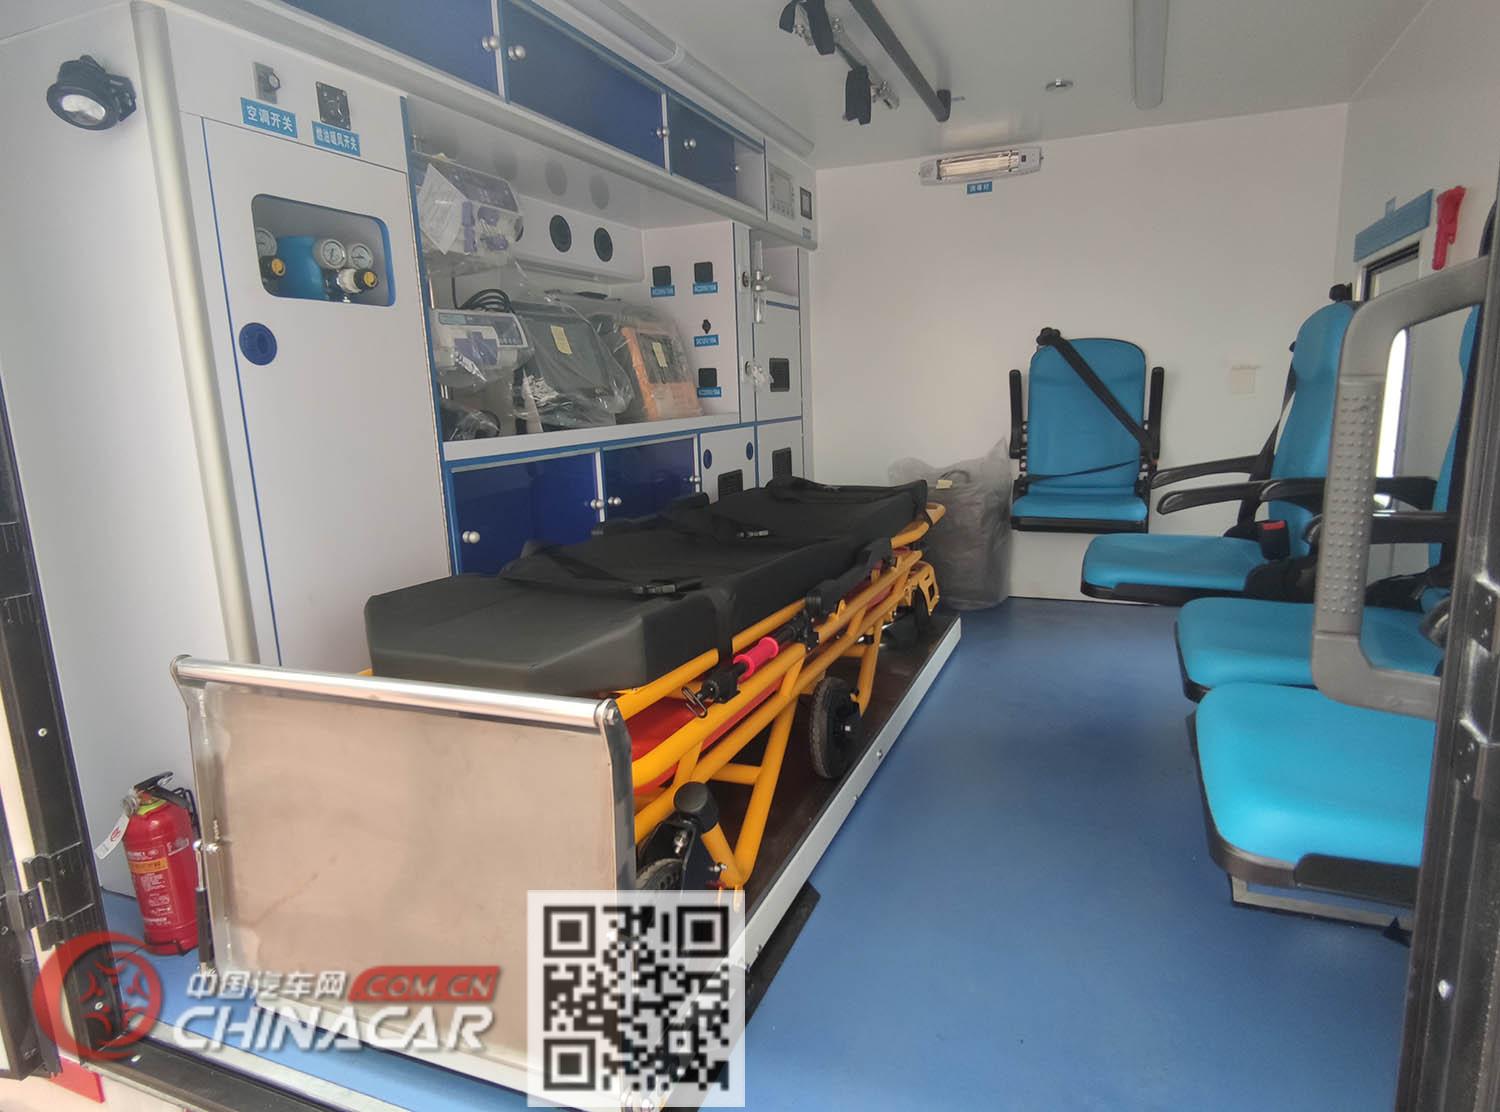 海能达牌HCV5060XJHD型救护车